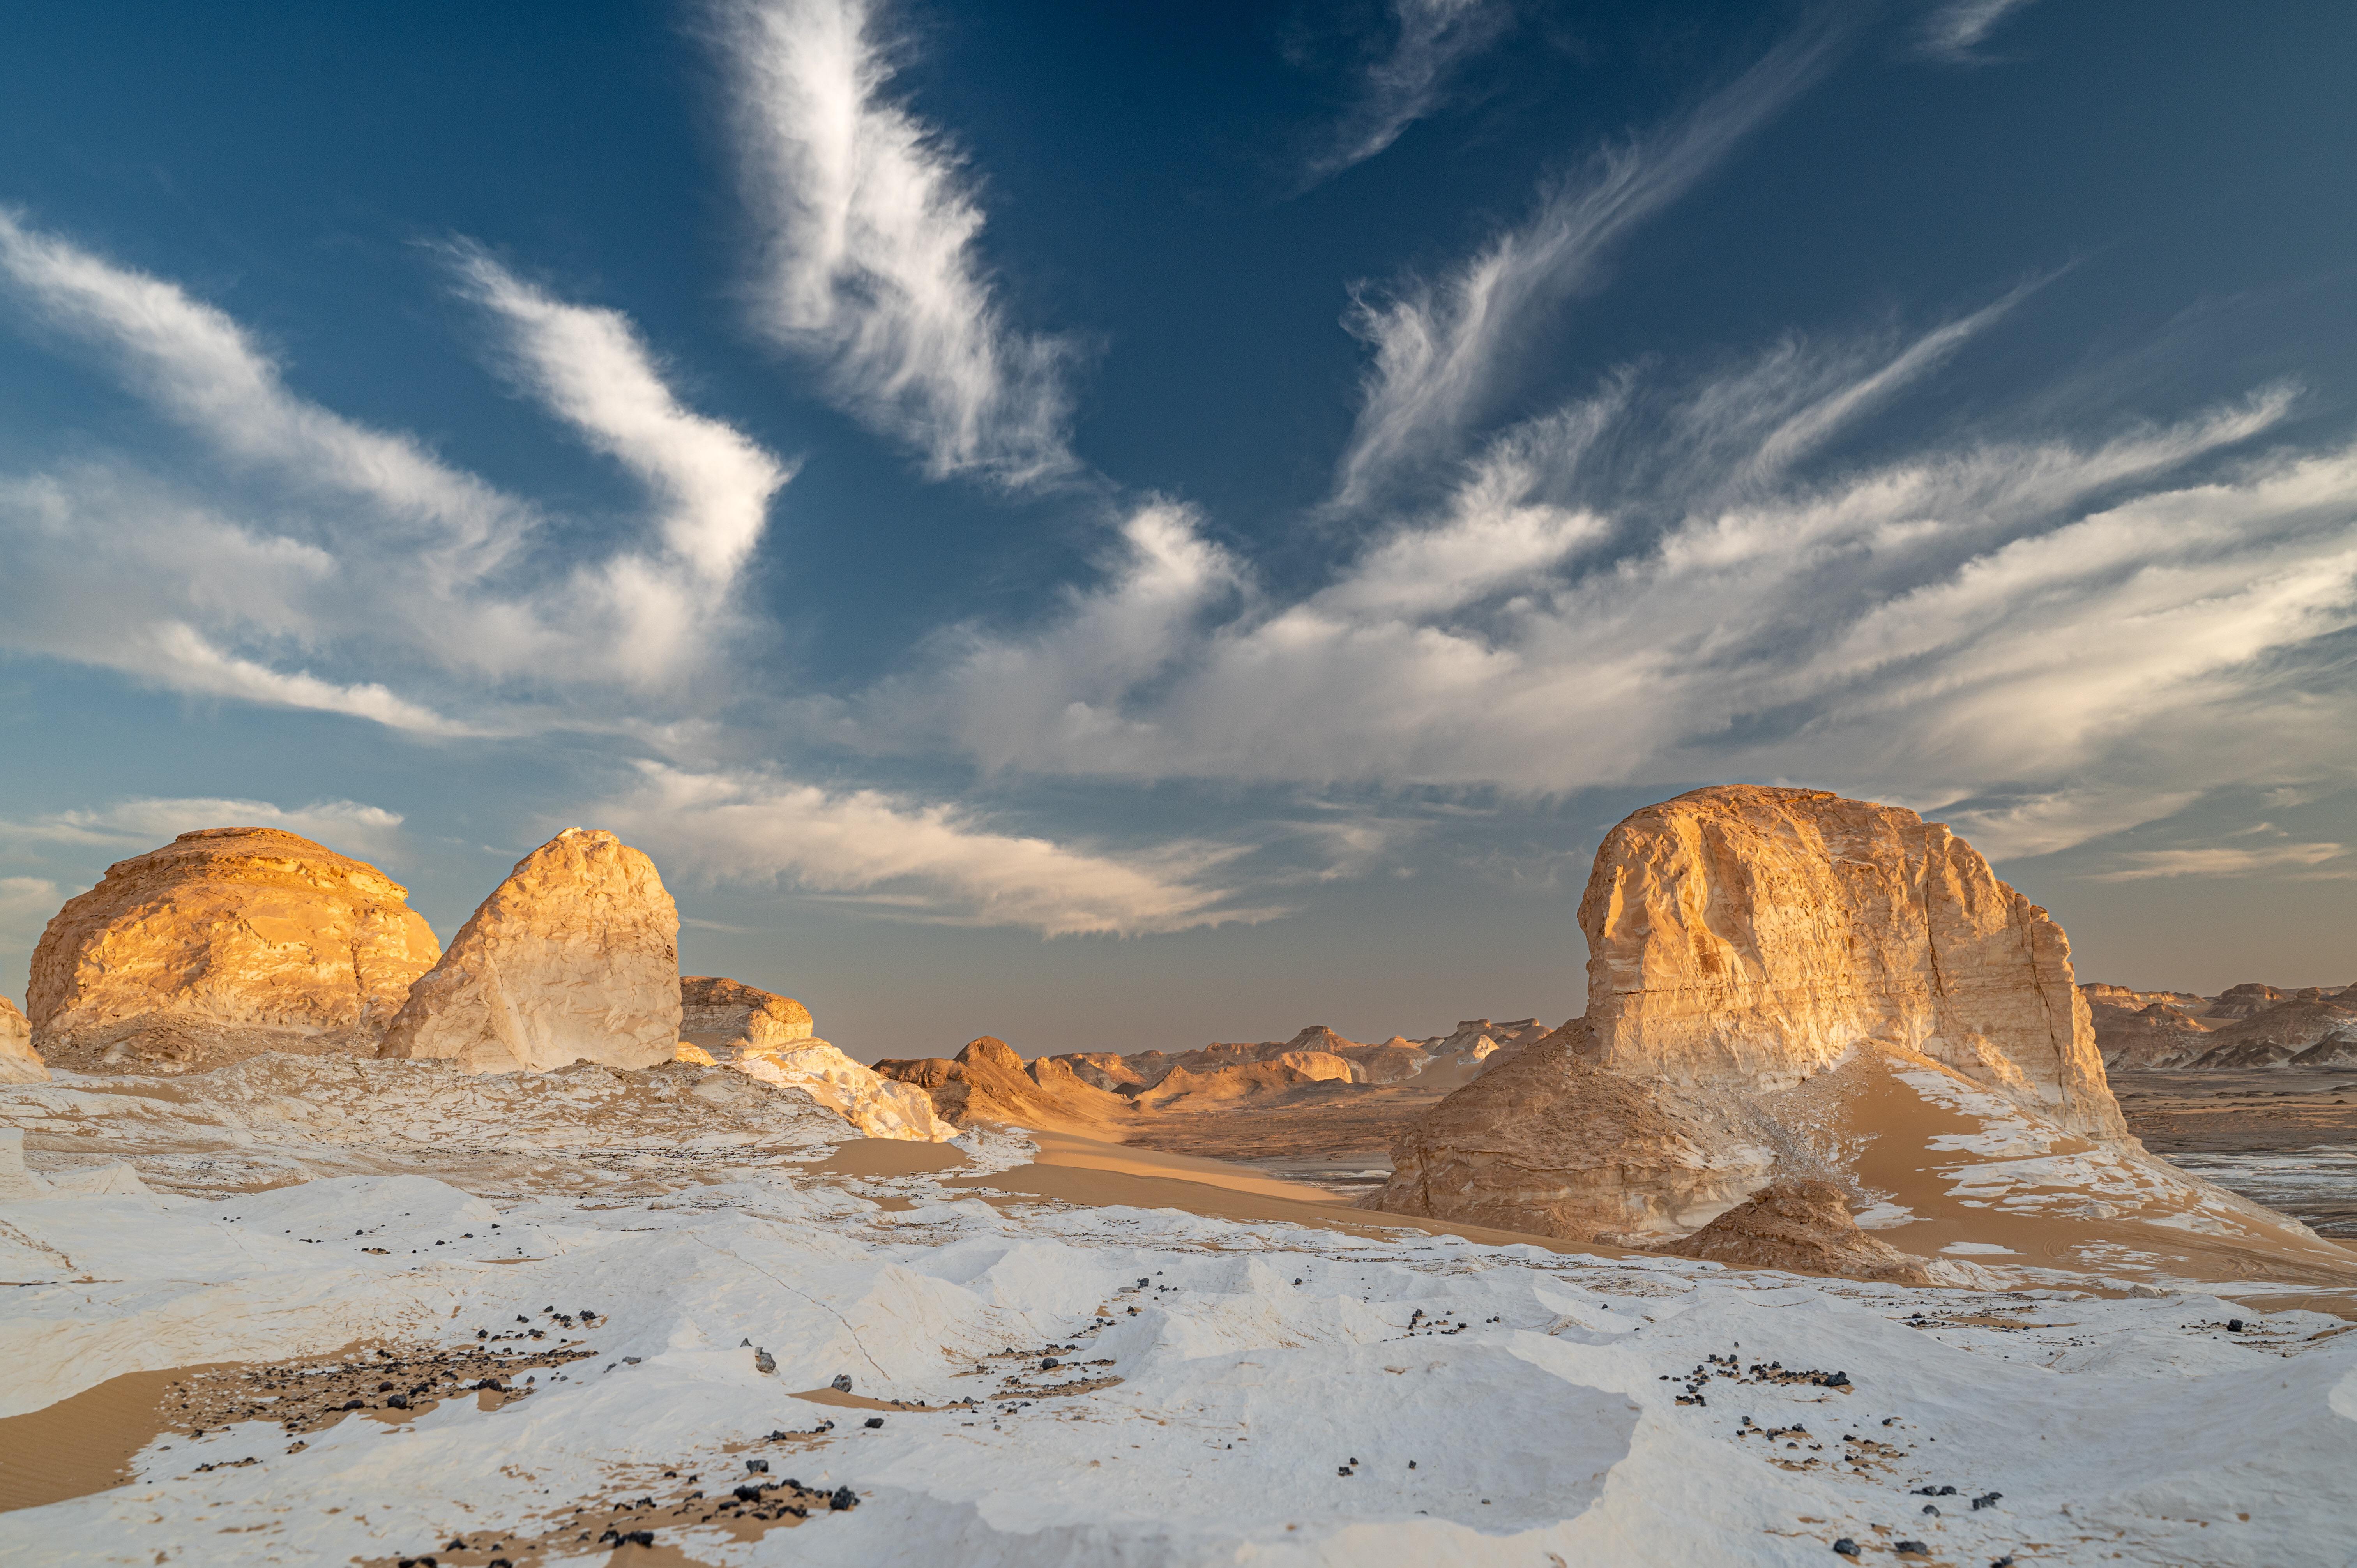 General 6048x4024 Egypt desert snow sunrise landscape nature clouds